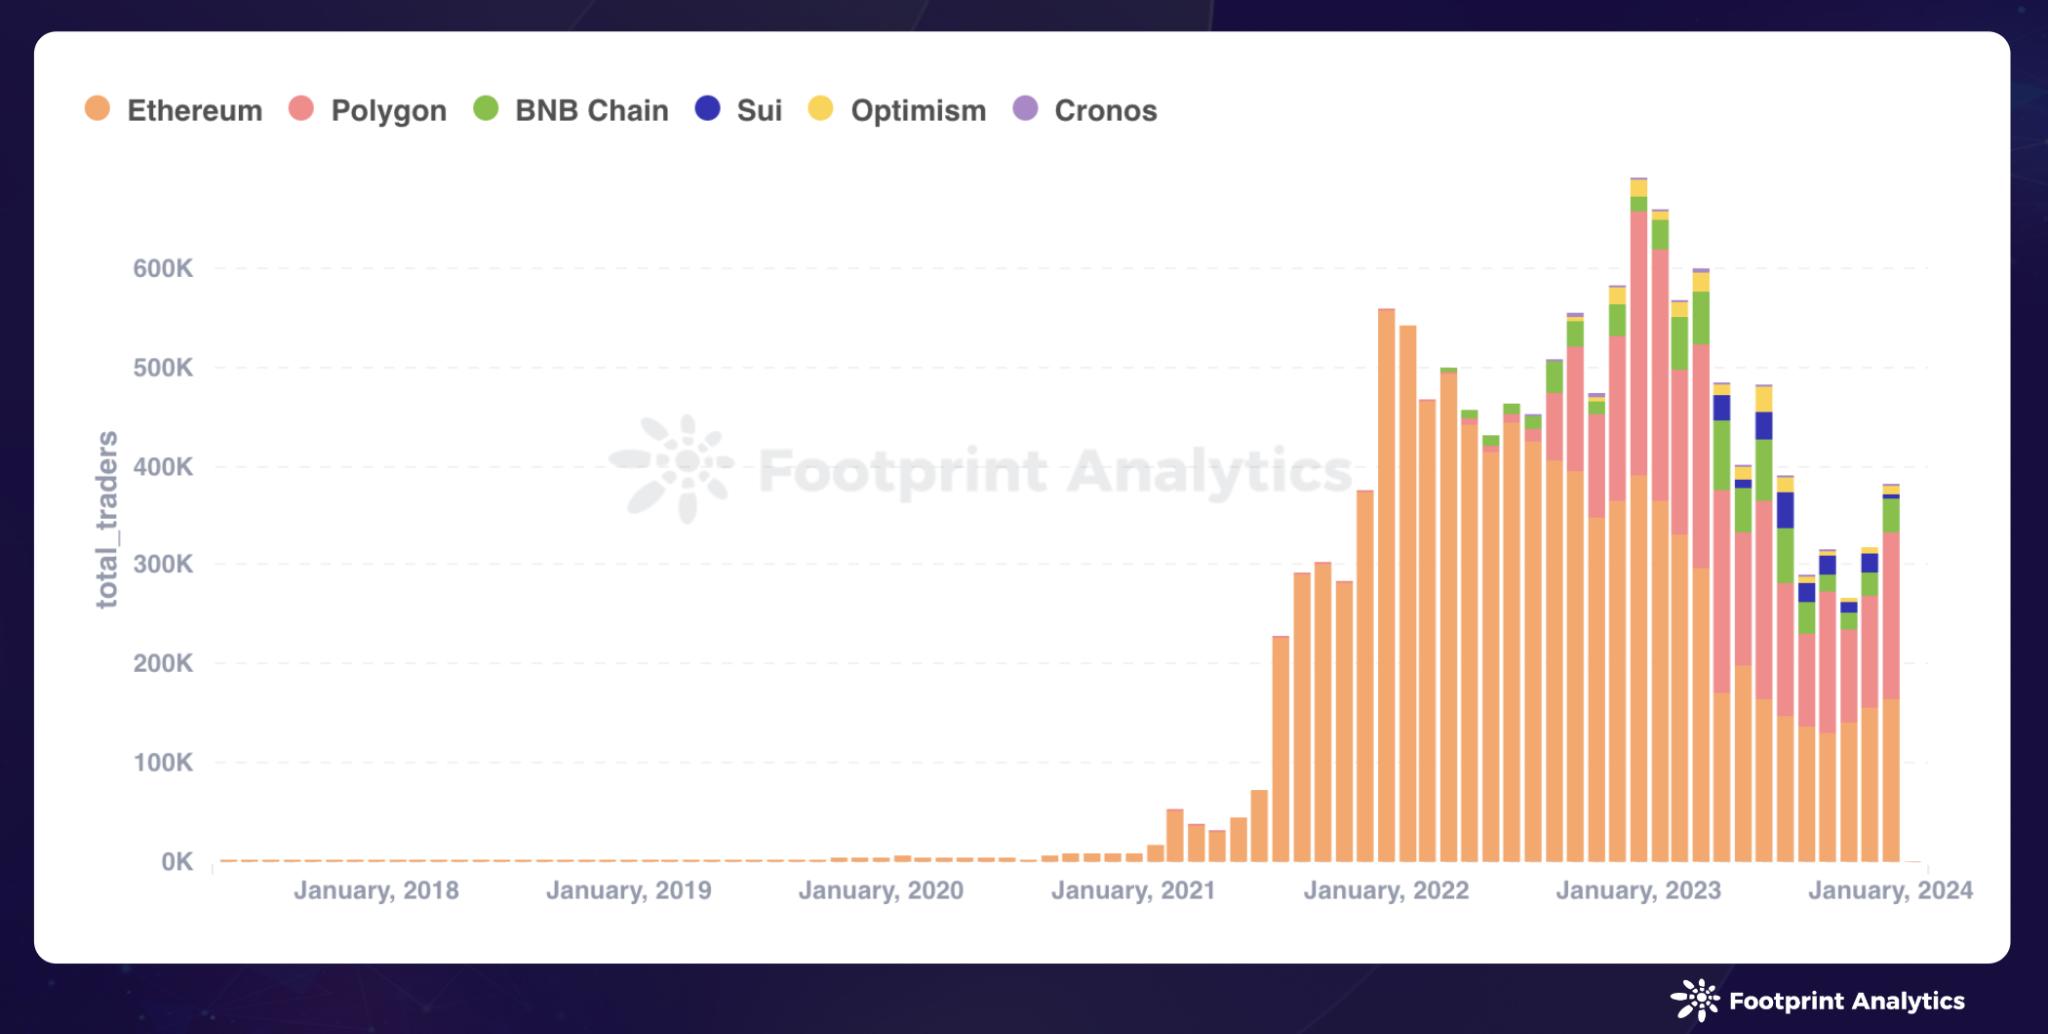 数据来源：Monthly Unique Users by Chain - Footprint Analytics